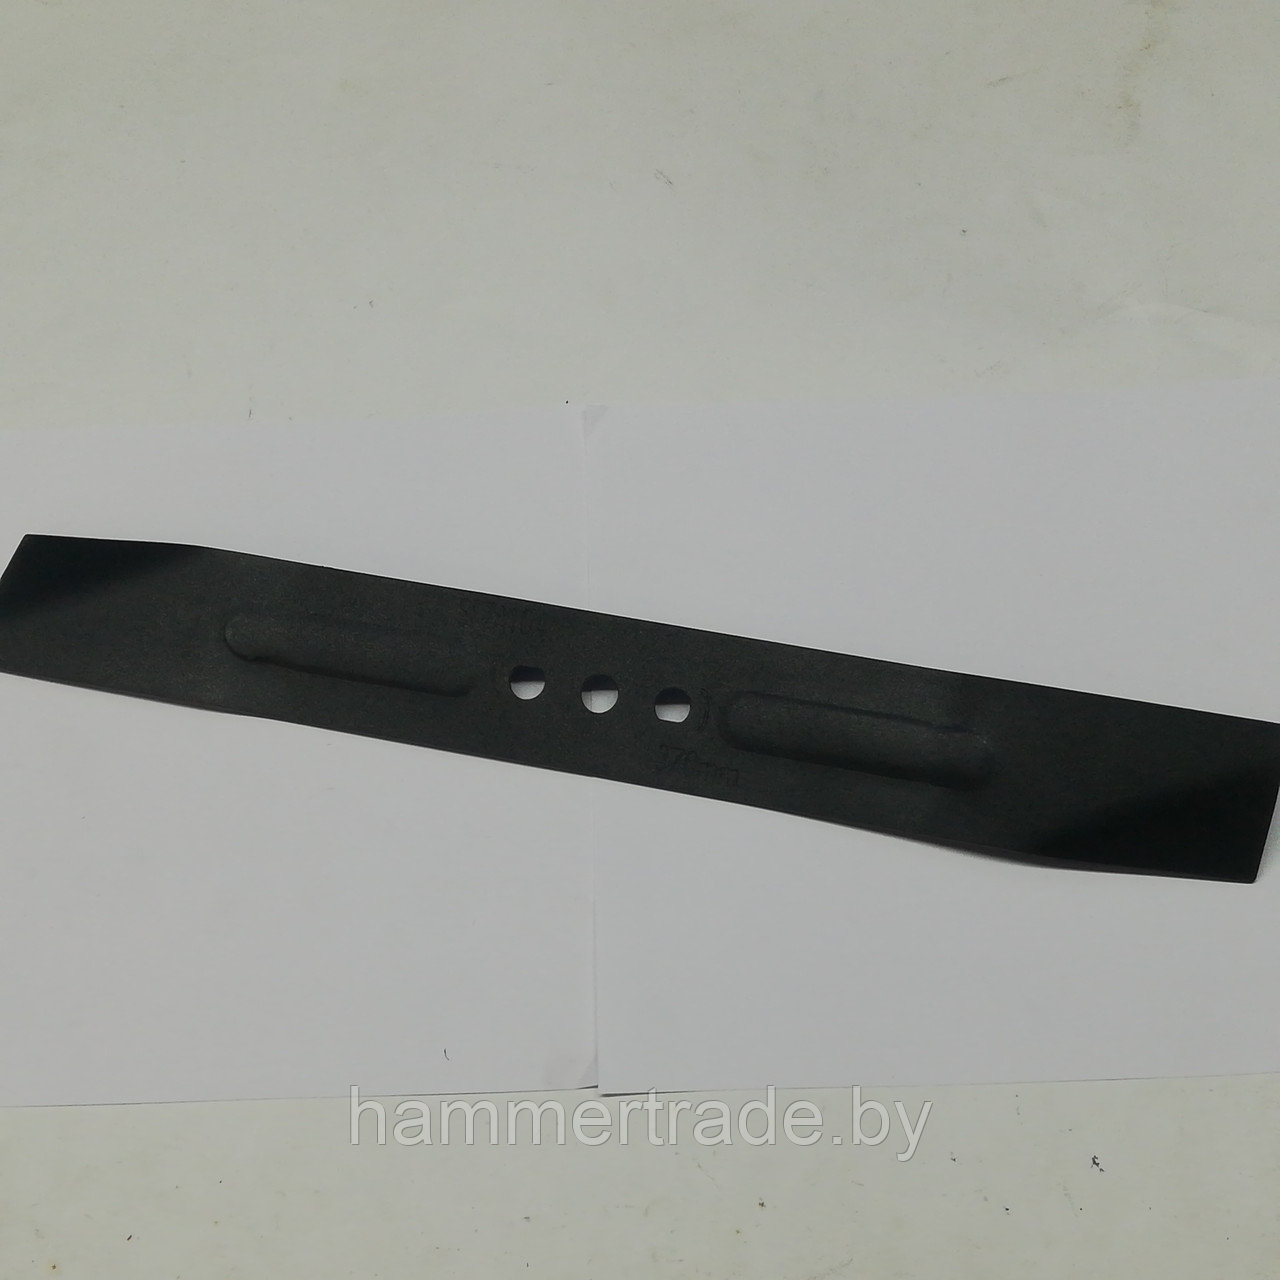 Нож для газонокосилки Калибр ГКЭ-1600/37 (37 см)